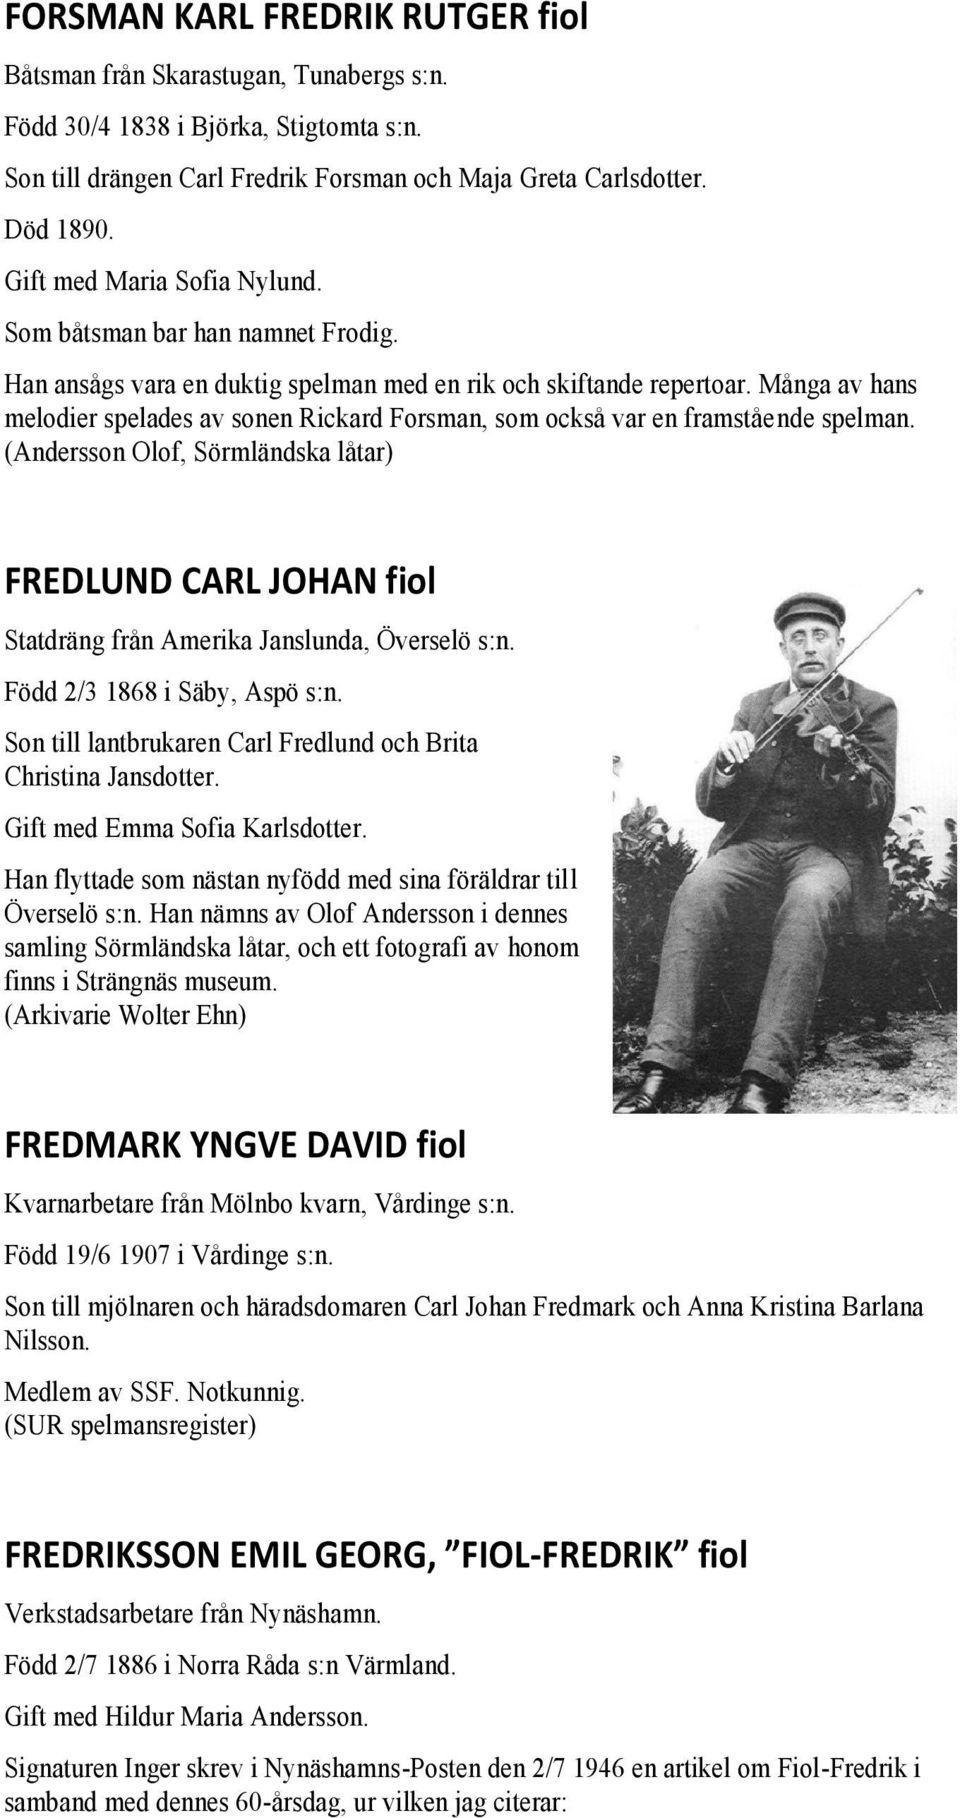 Många av hans melodier spelades av sonen Rickard Forsman, som också var en framstående spelman. FREDLUND CARL JOHAN fiol Statdräng från Amerika Janslunda, Överselö s:n. Född 2/3 1868 i Säby, Aspö s:n.